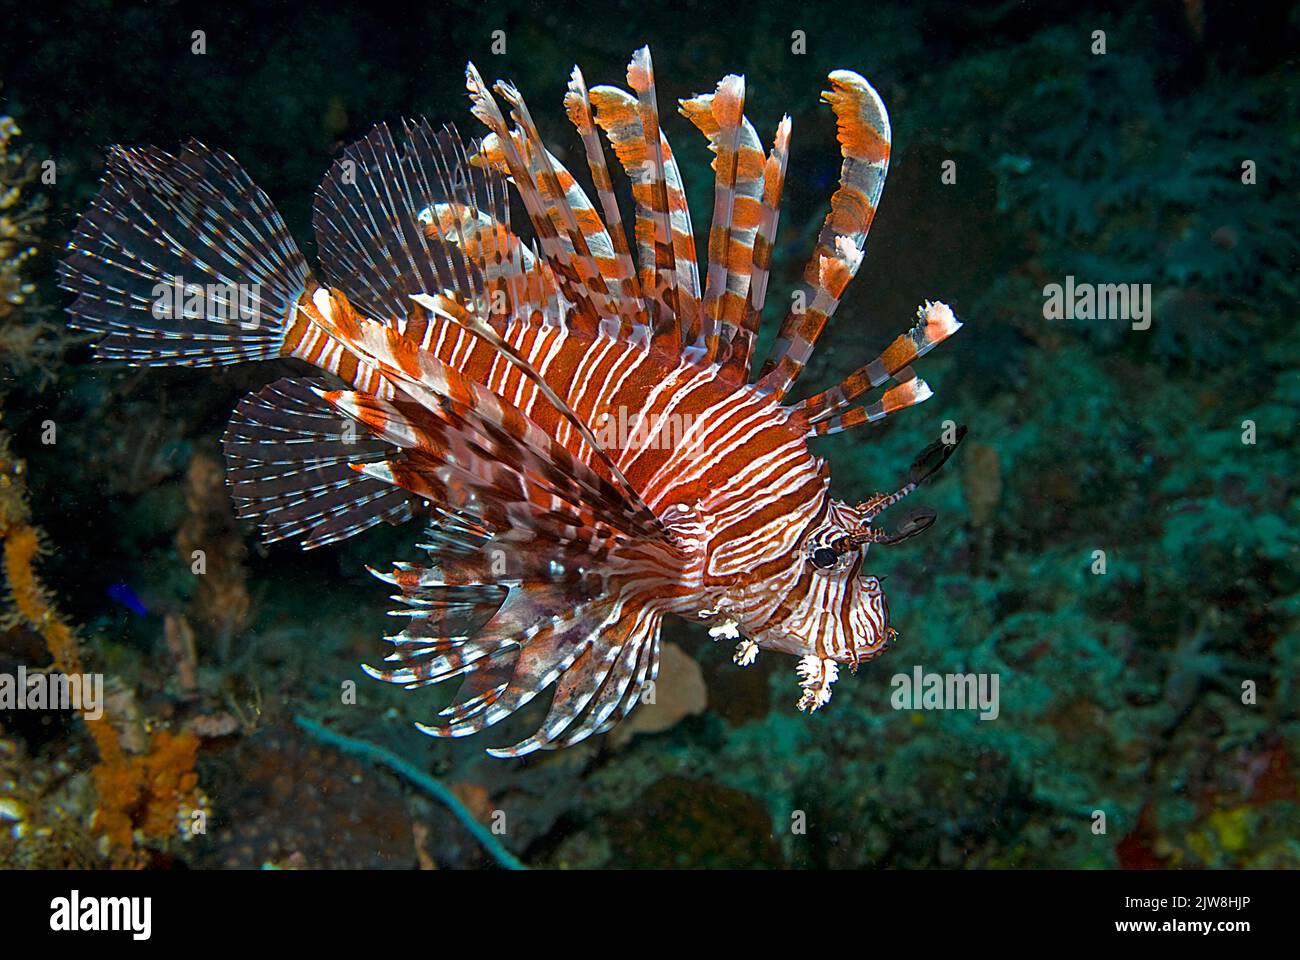 Rotlionfisch oder Rotlionfisch (Pterois volitans), Raja Ampat, Irian Jaya, Indonesien, Pazifischer Ozean, Asien Stockfoto